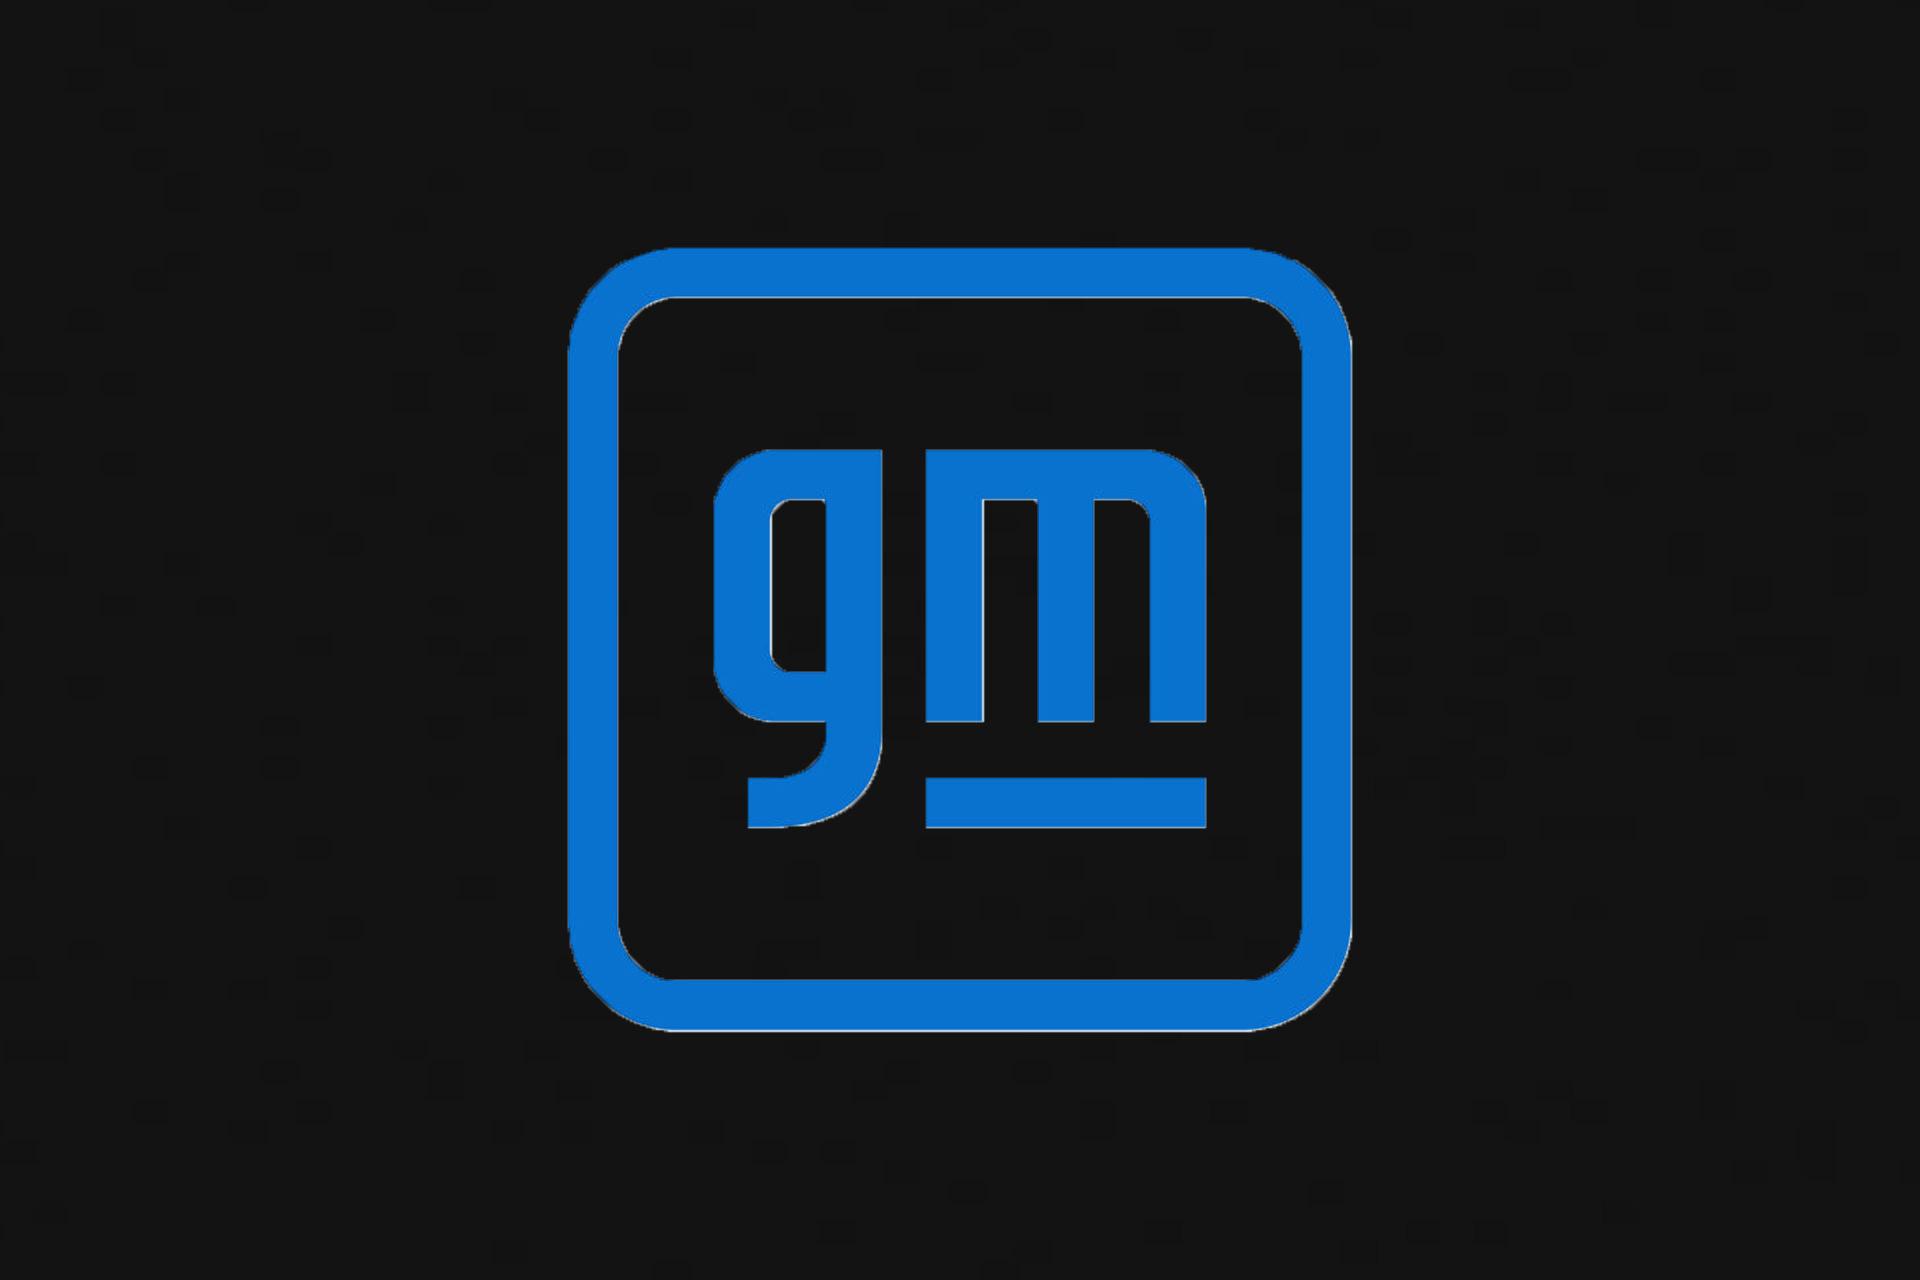 لوگو جدید جنرال موتورز / GM رنگ آبی ساده با پس زمینه مشکی